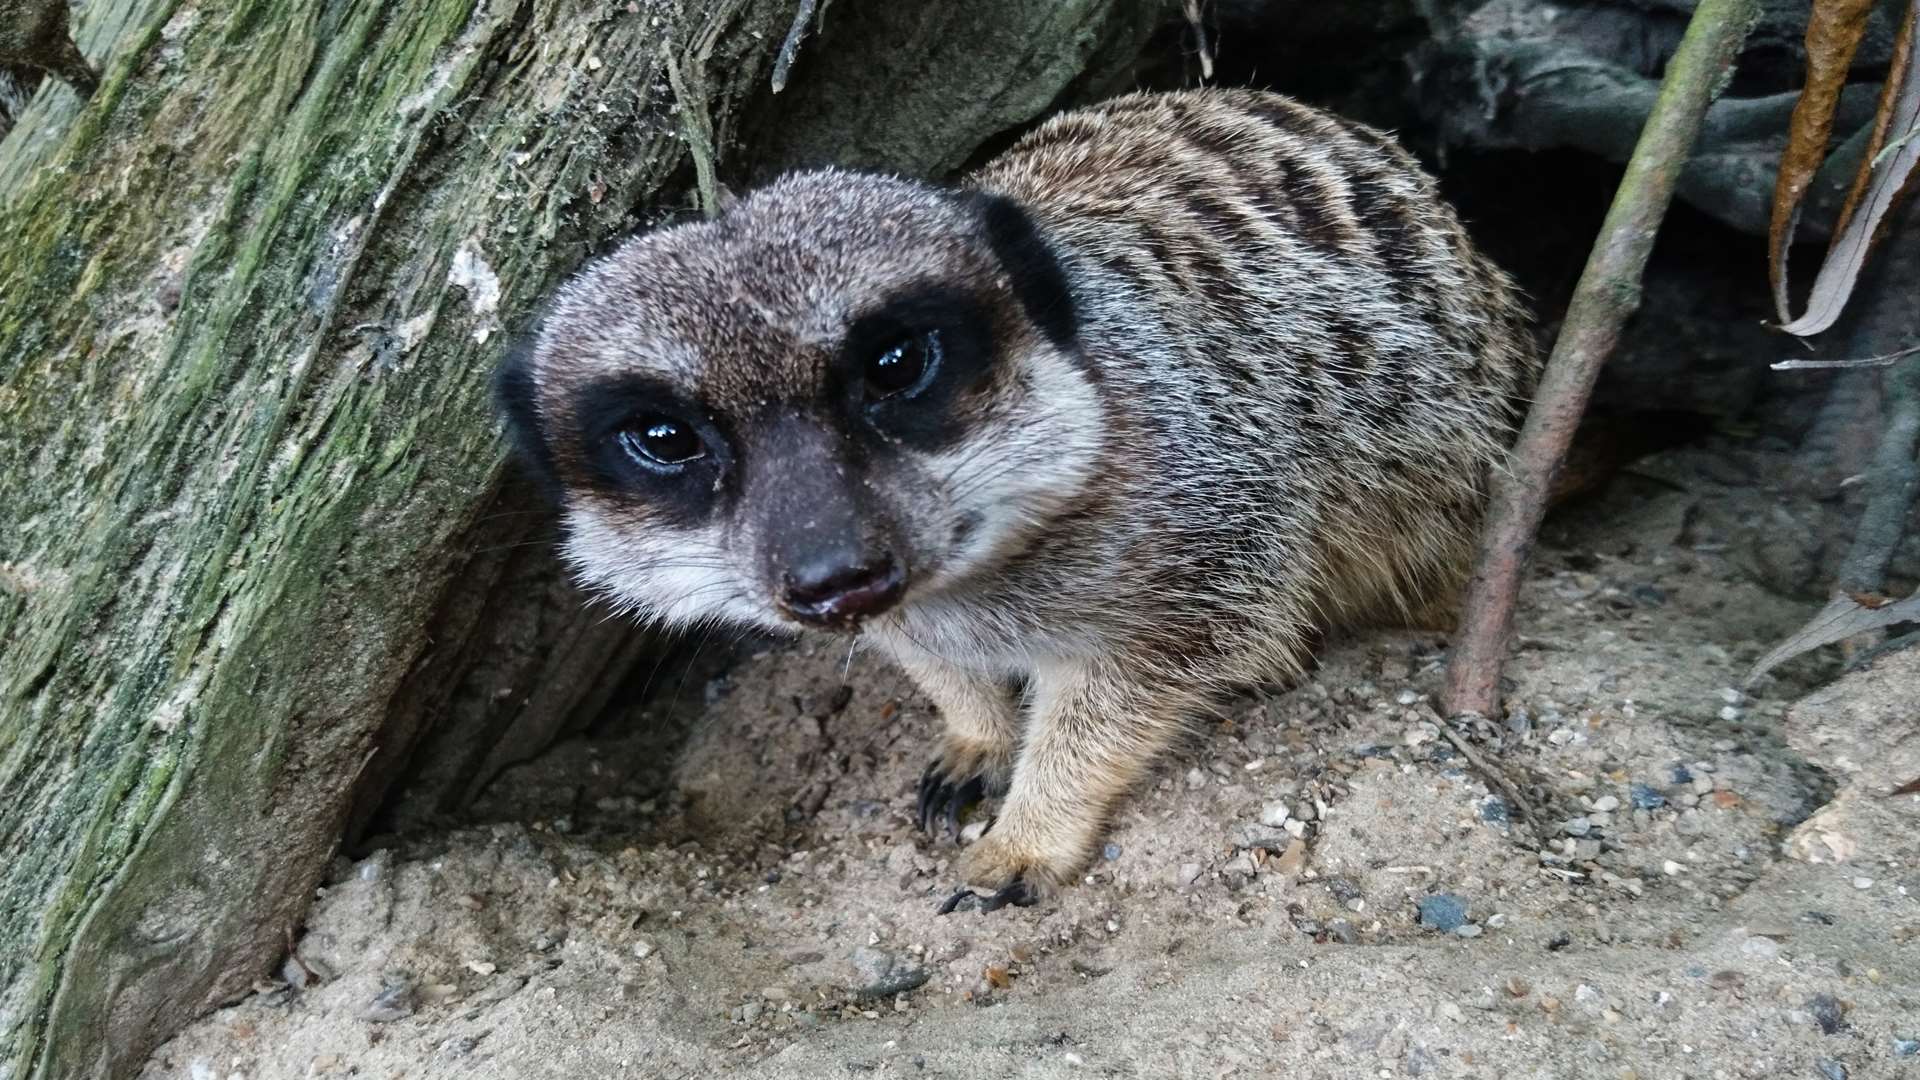 A meerkat takes a peek